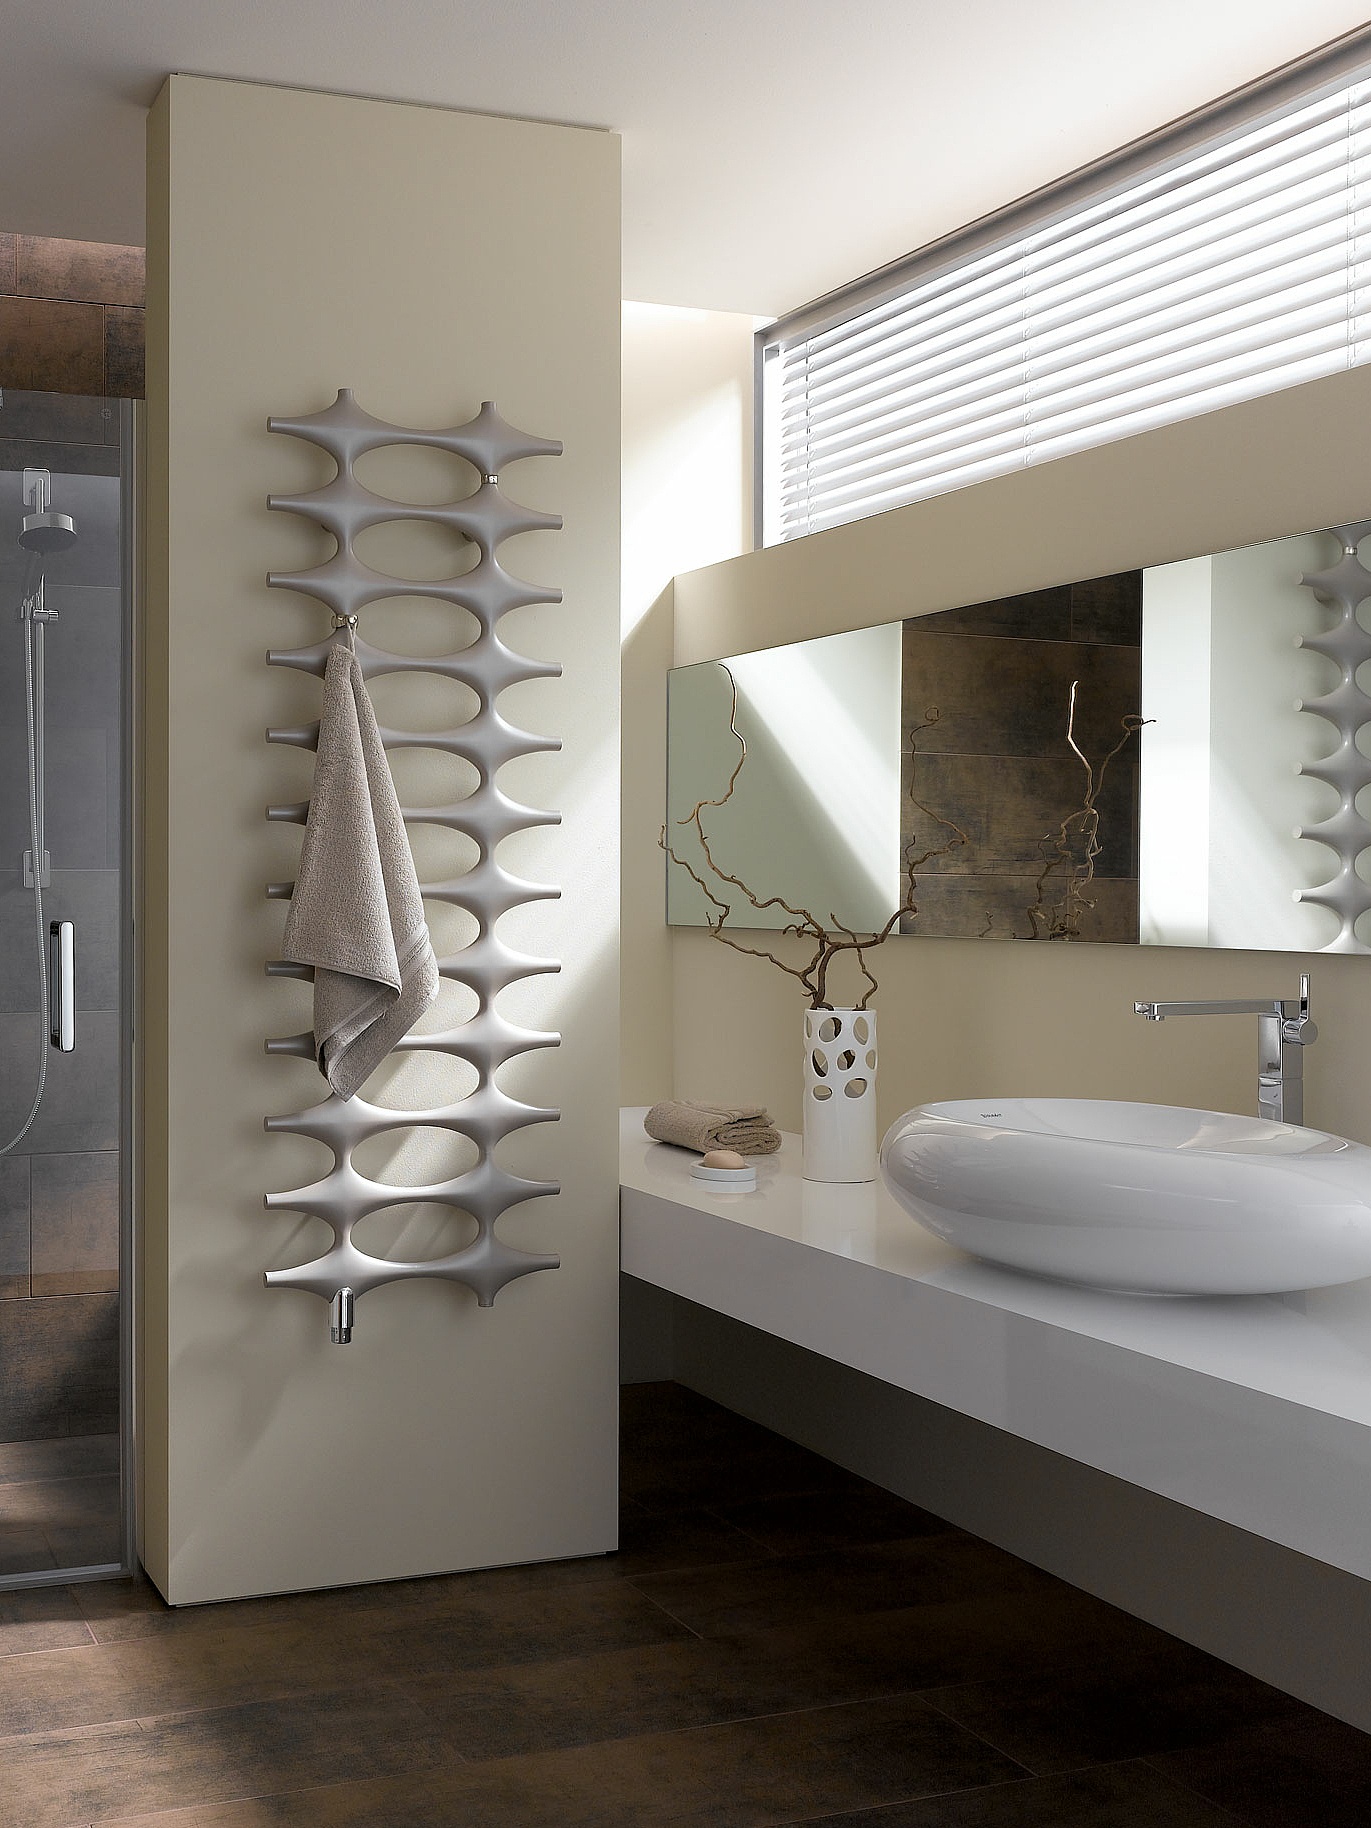 Radiatore da bagno e di design Kermi Ideos con design unico.